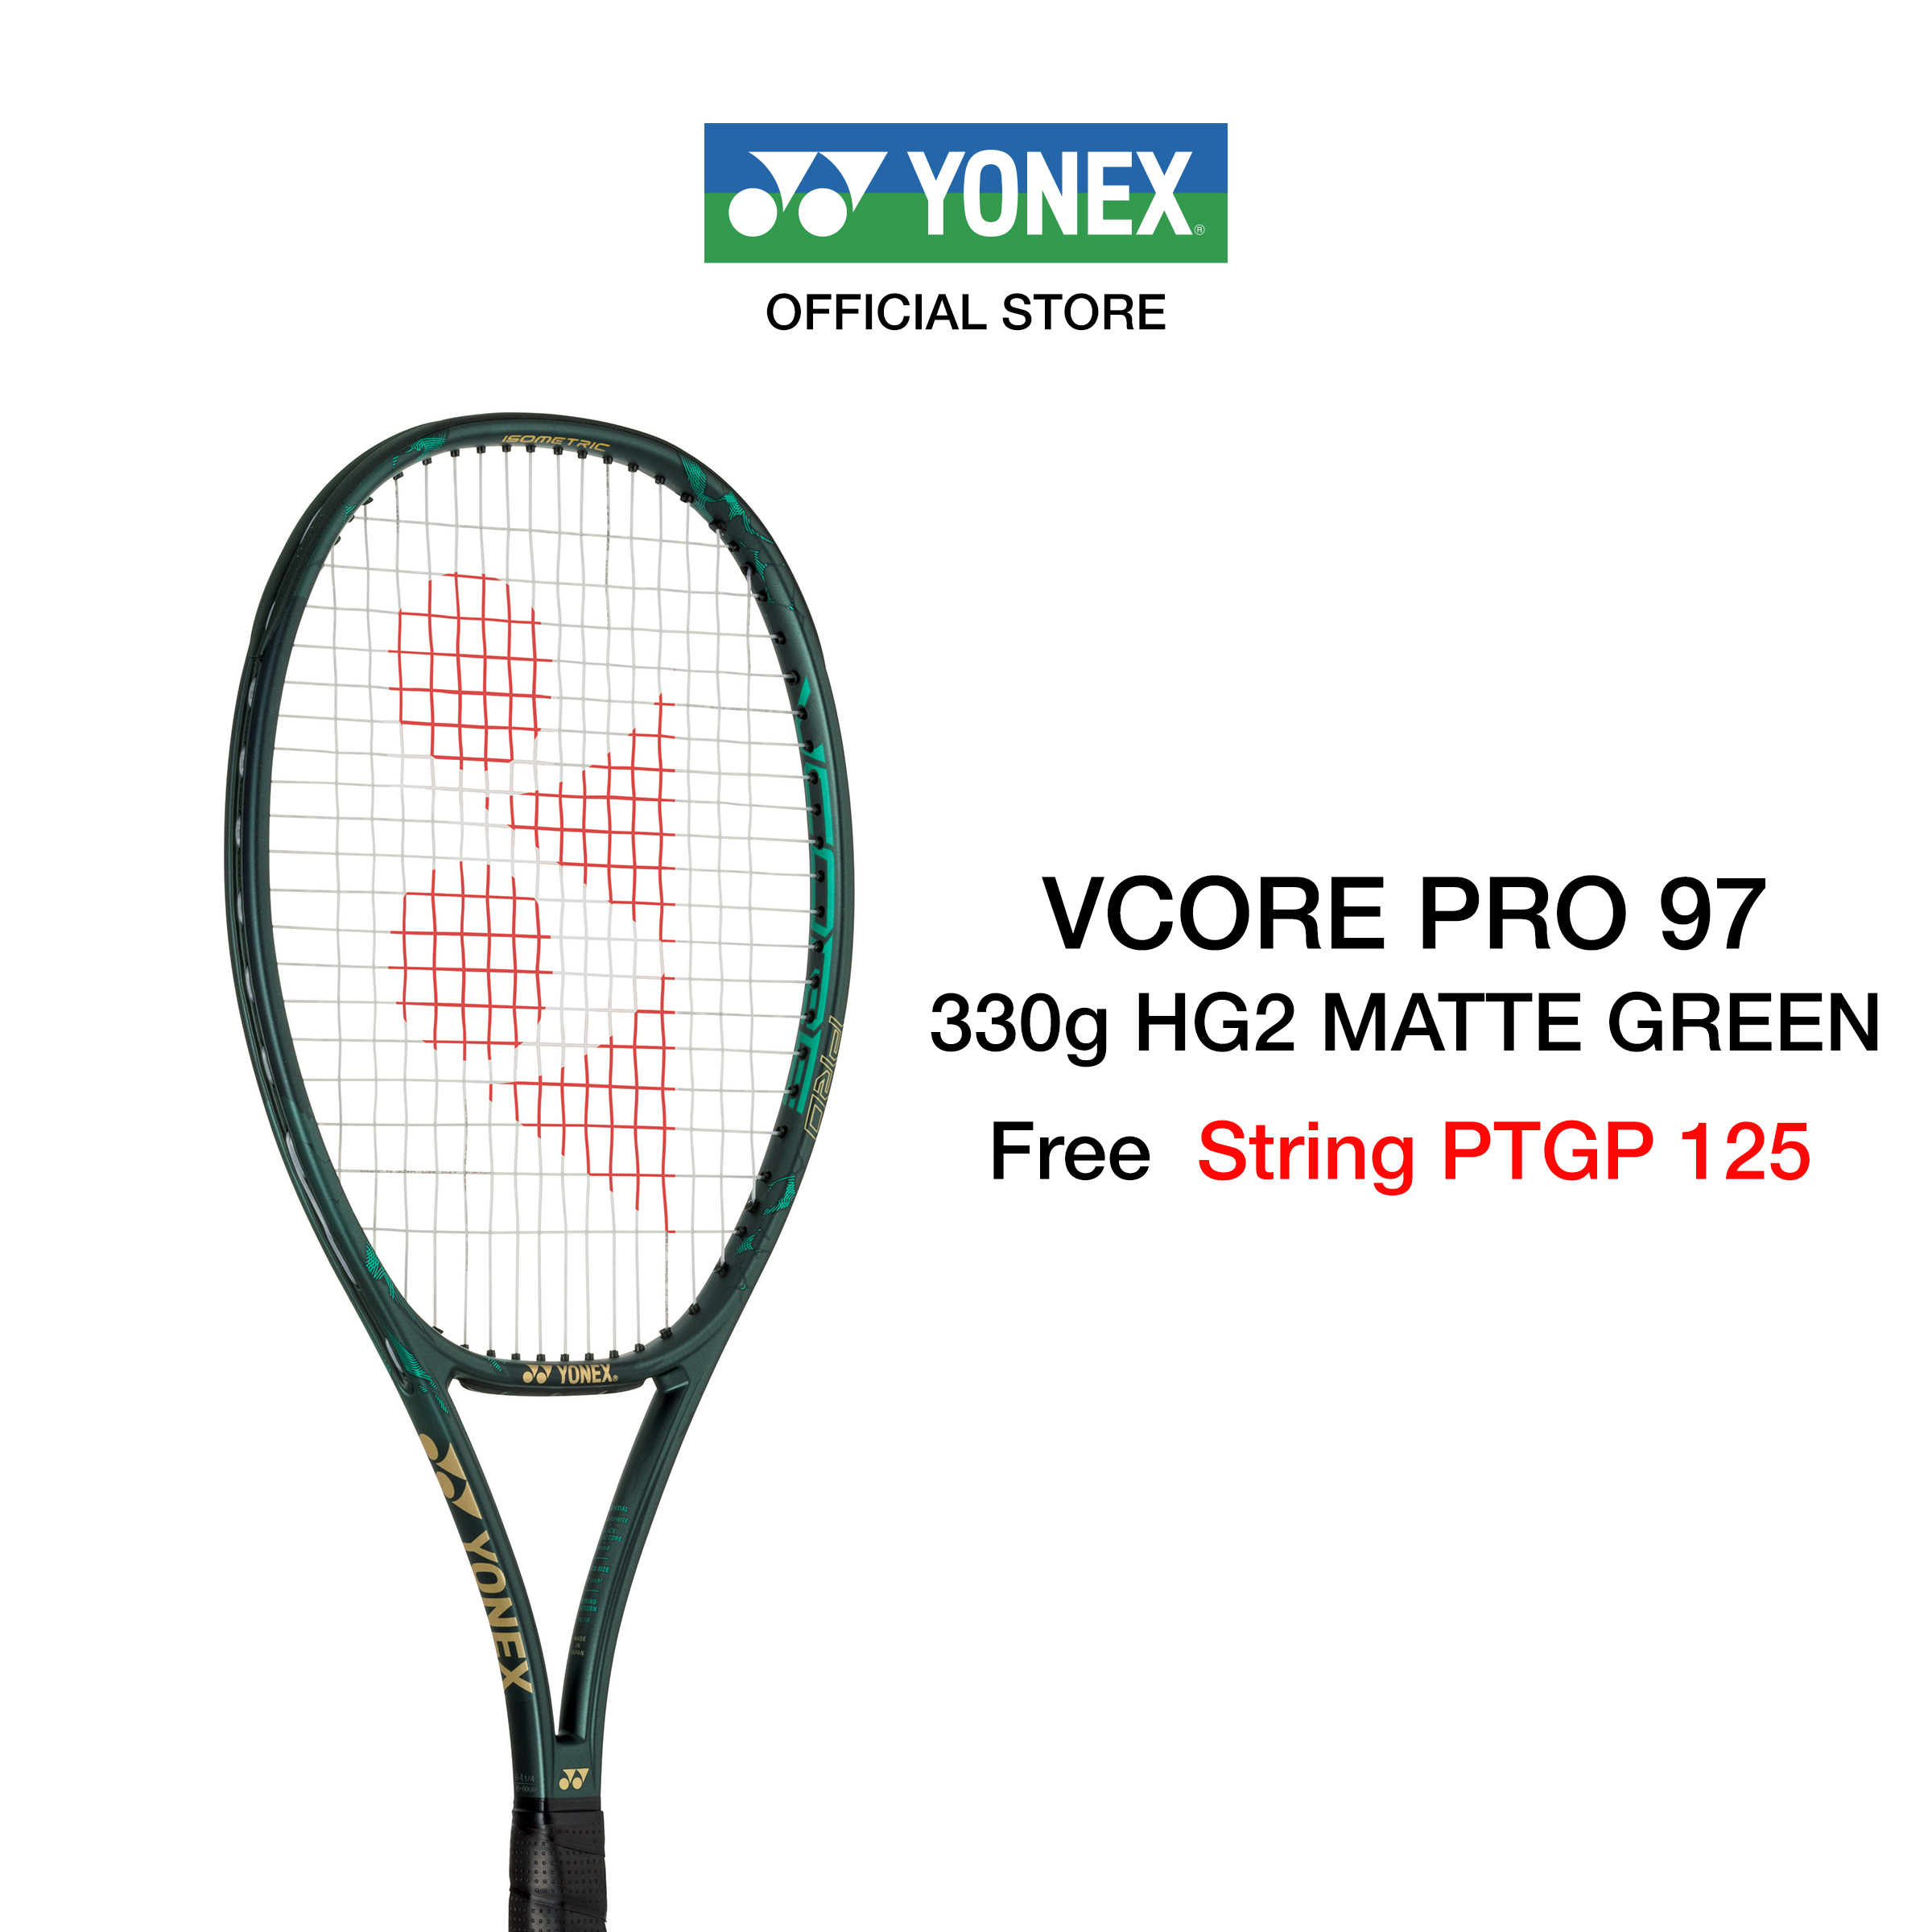 ไม้เทนนิส YONEX รุ่น VCORE PRO 97 (2019)  ไม้เทนนิสสายคอนโทรล ไม้สำหรับผู้เล่นทั่วไปและระดับอาชีพที่ต้องการคอนโทรลและฟิลการตีที่ดี แถมเอ็น PTGP 125